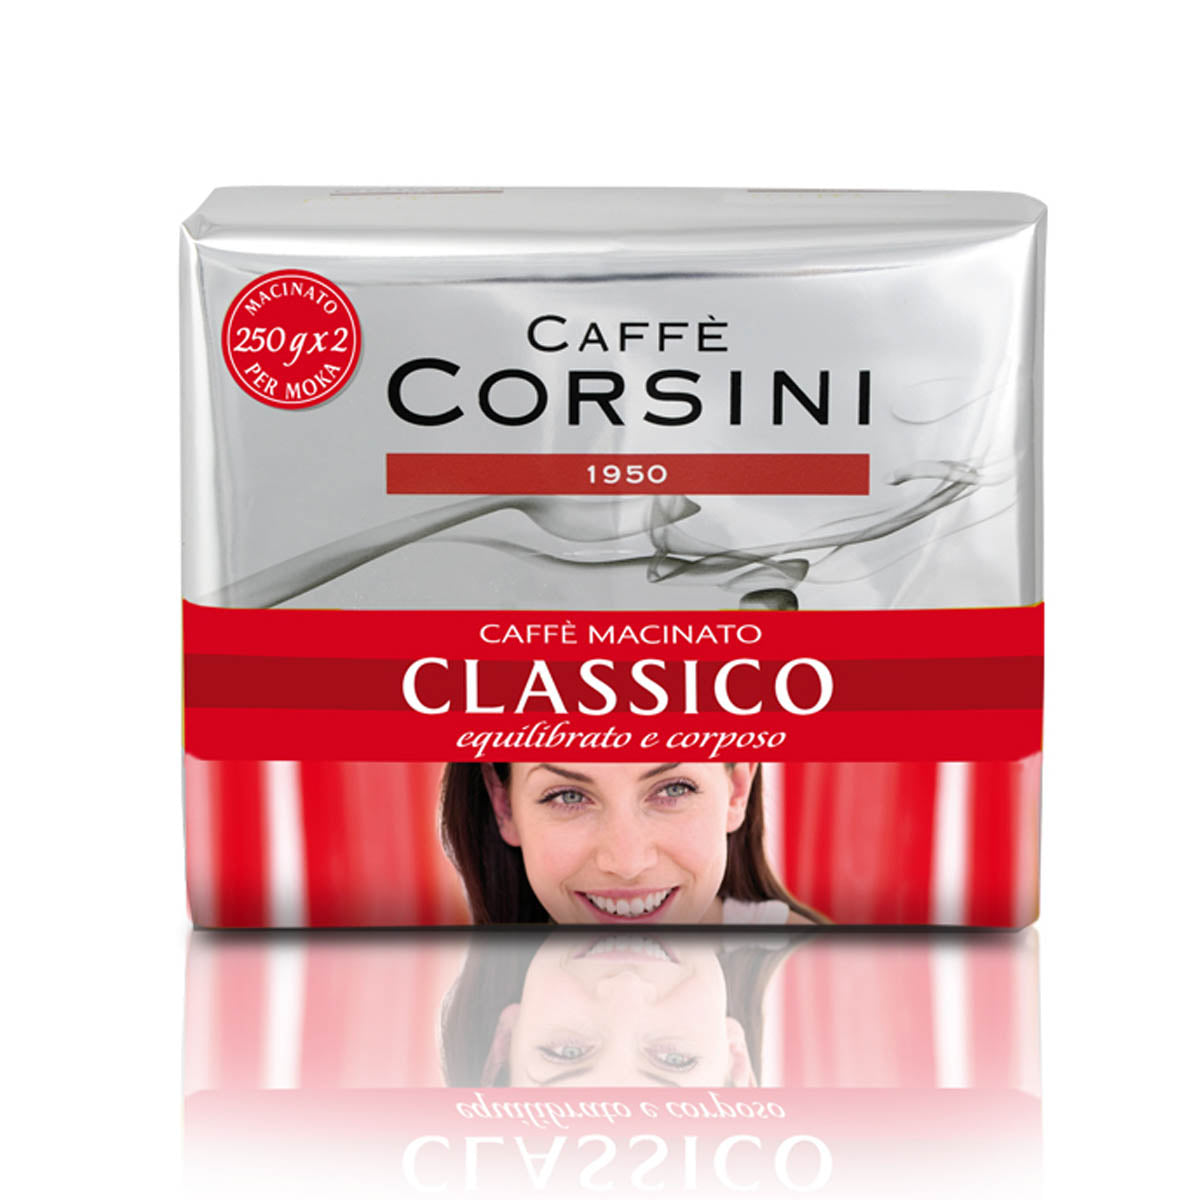 Caffè macinato gusto classico | Confezione con 2 pacchetti da 250g l'uno | Cartone con 10 confezioni